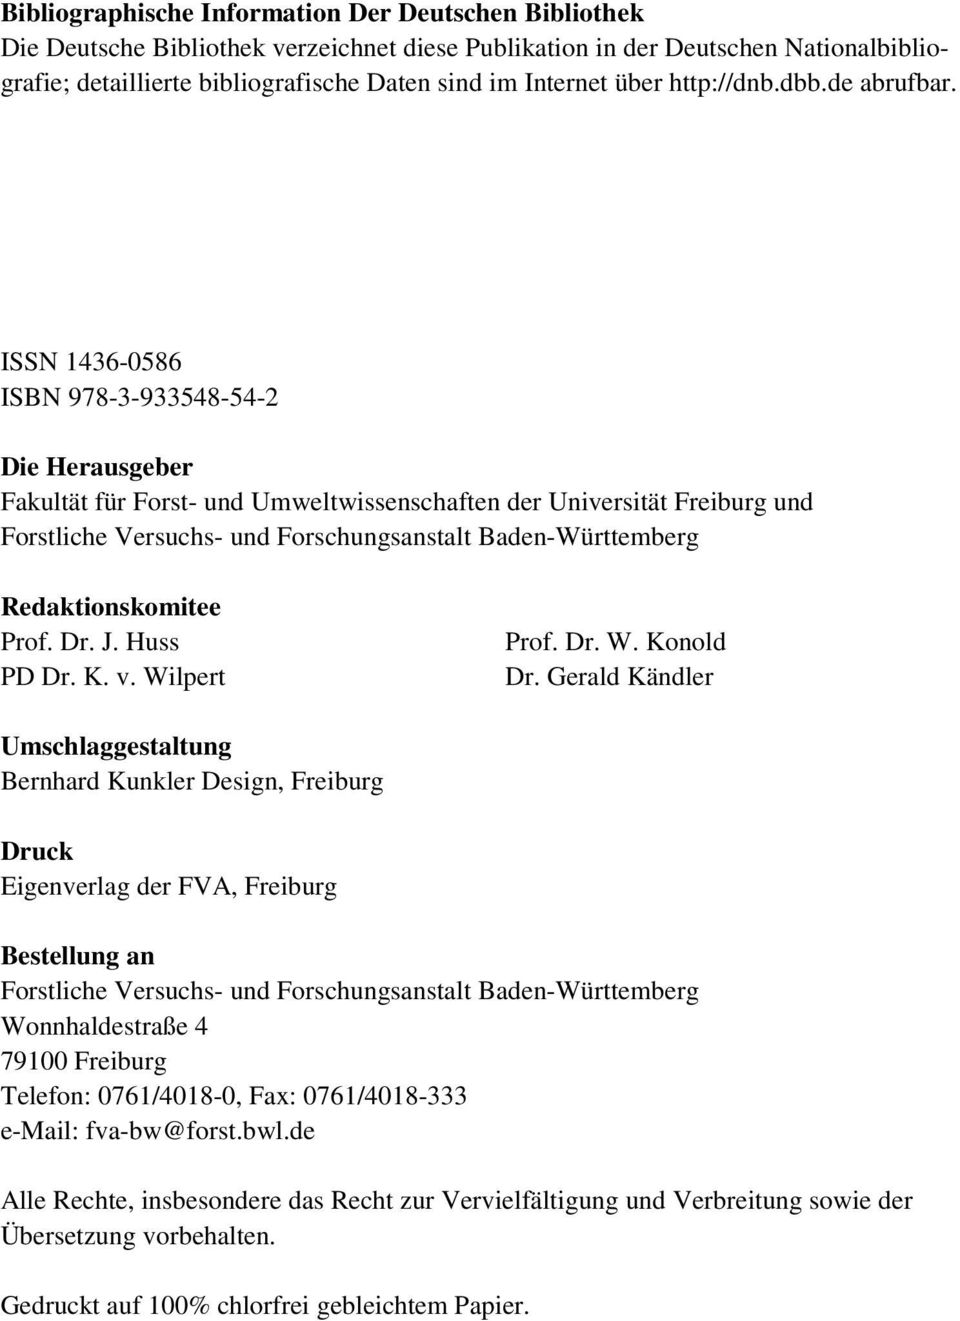 ISSN 1436-0586 ISBN 978-3-933548-54-2 Die Herausgeber Fakultät für Forst- und Umweltwissenschaften der Universität Freiburg und Forstliche Versuchs- und Forschungsanstalt Baden-Württemberg